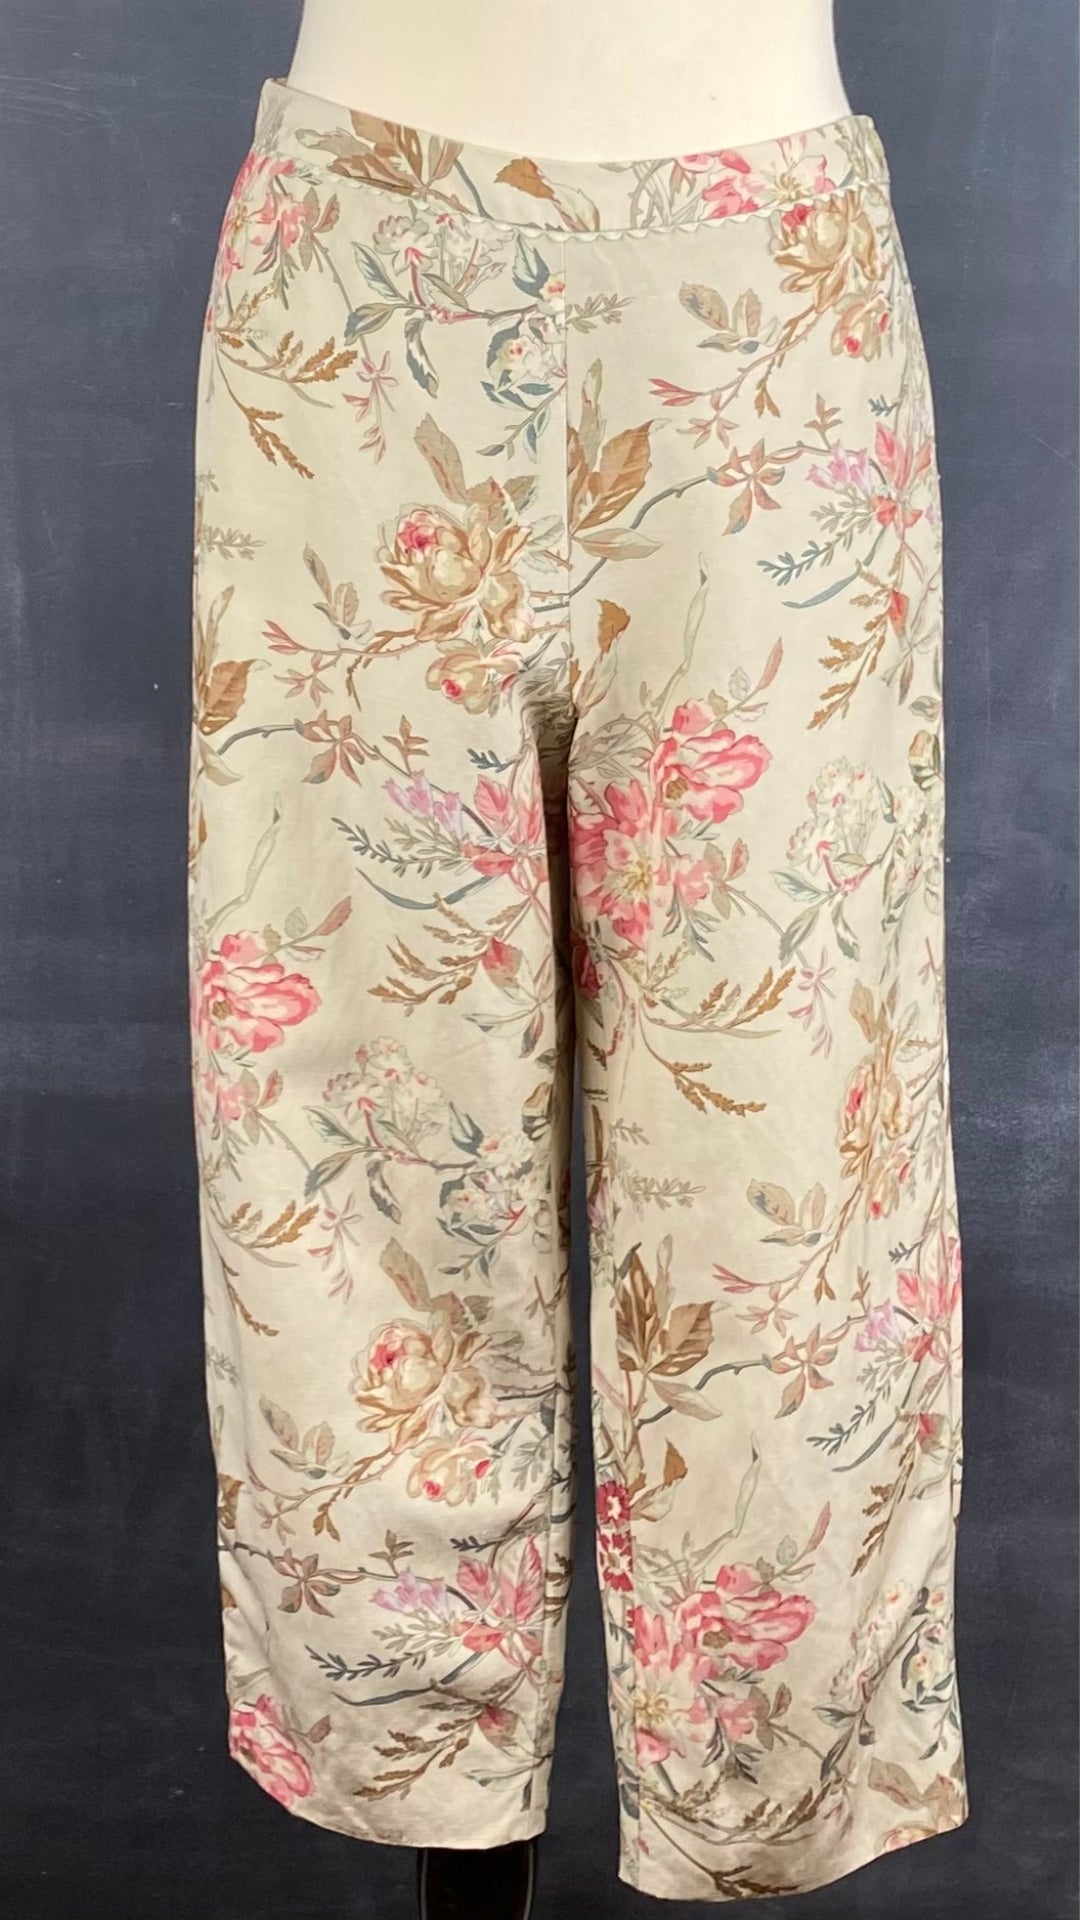 Pantalon motif floral en soie et lin Sutton Studio, taille 10. Vue de face sur un mannequin.